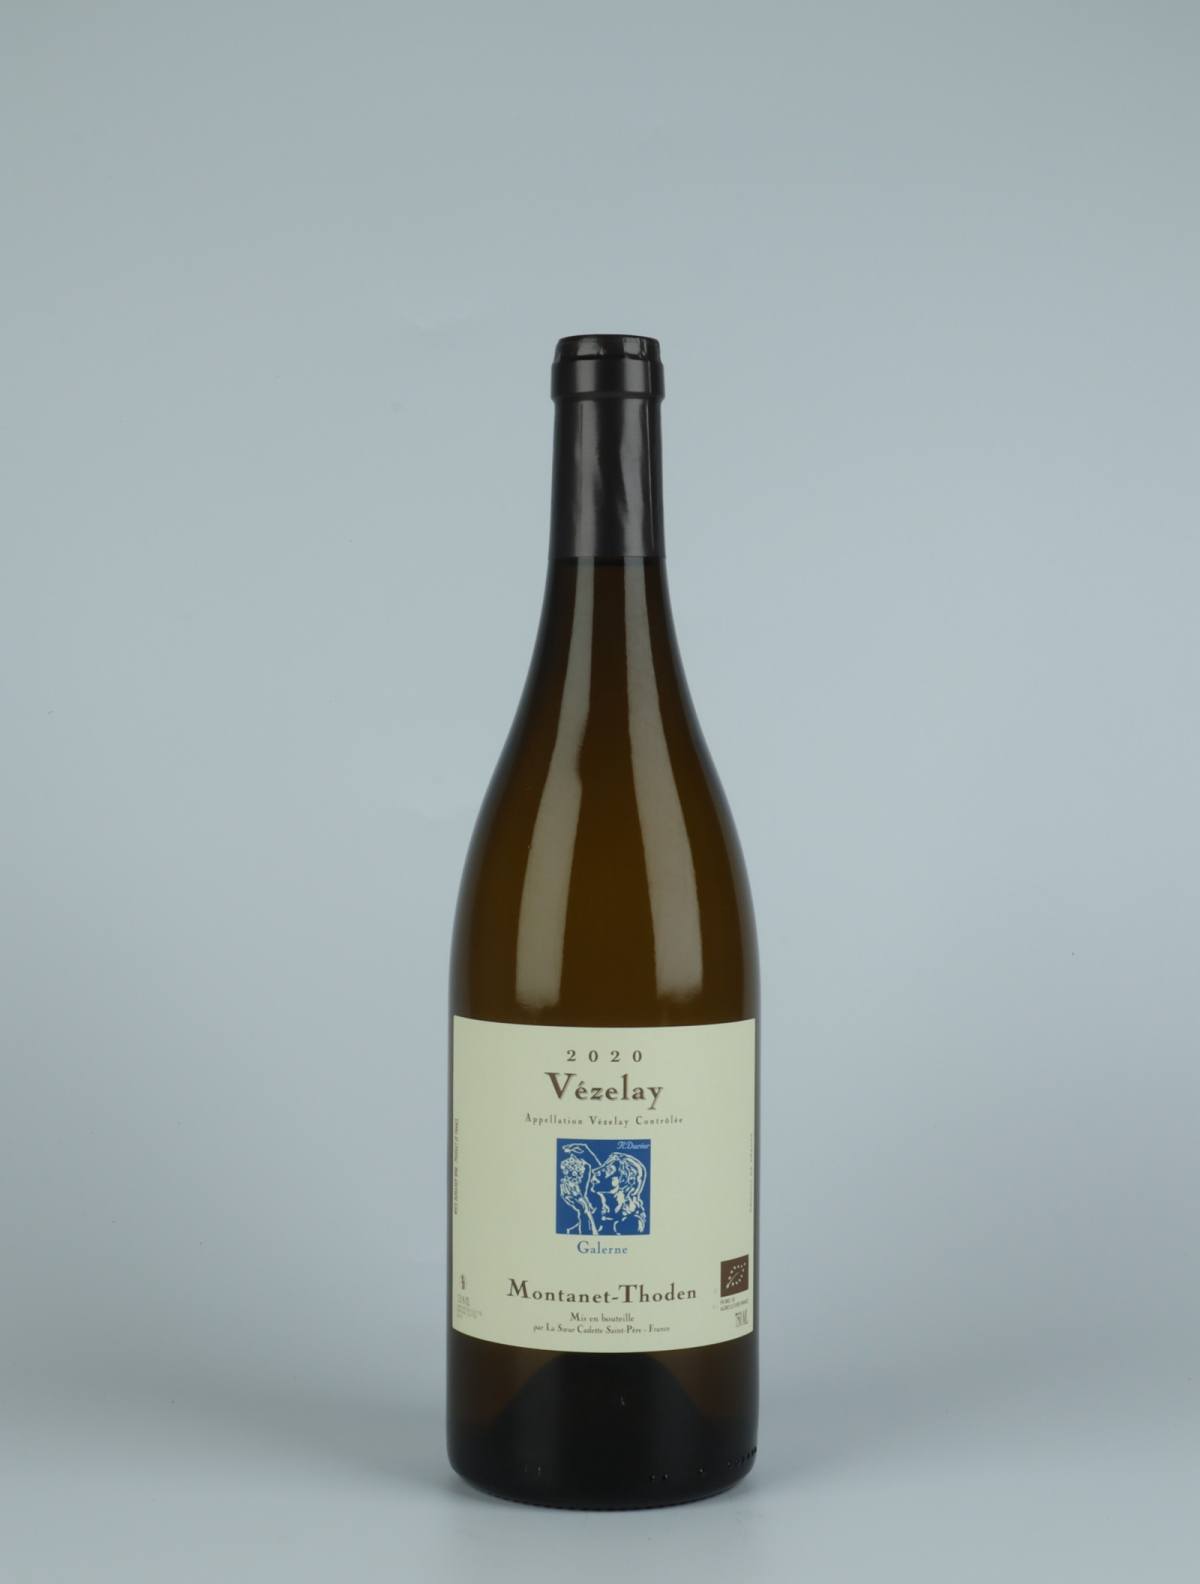 En flaske 2020 Bourgogne Vézelay - Galerne Hvidvin fra Domaine Montanet-Thoden, Bourgogne i Frankrig